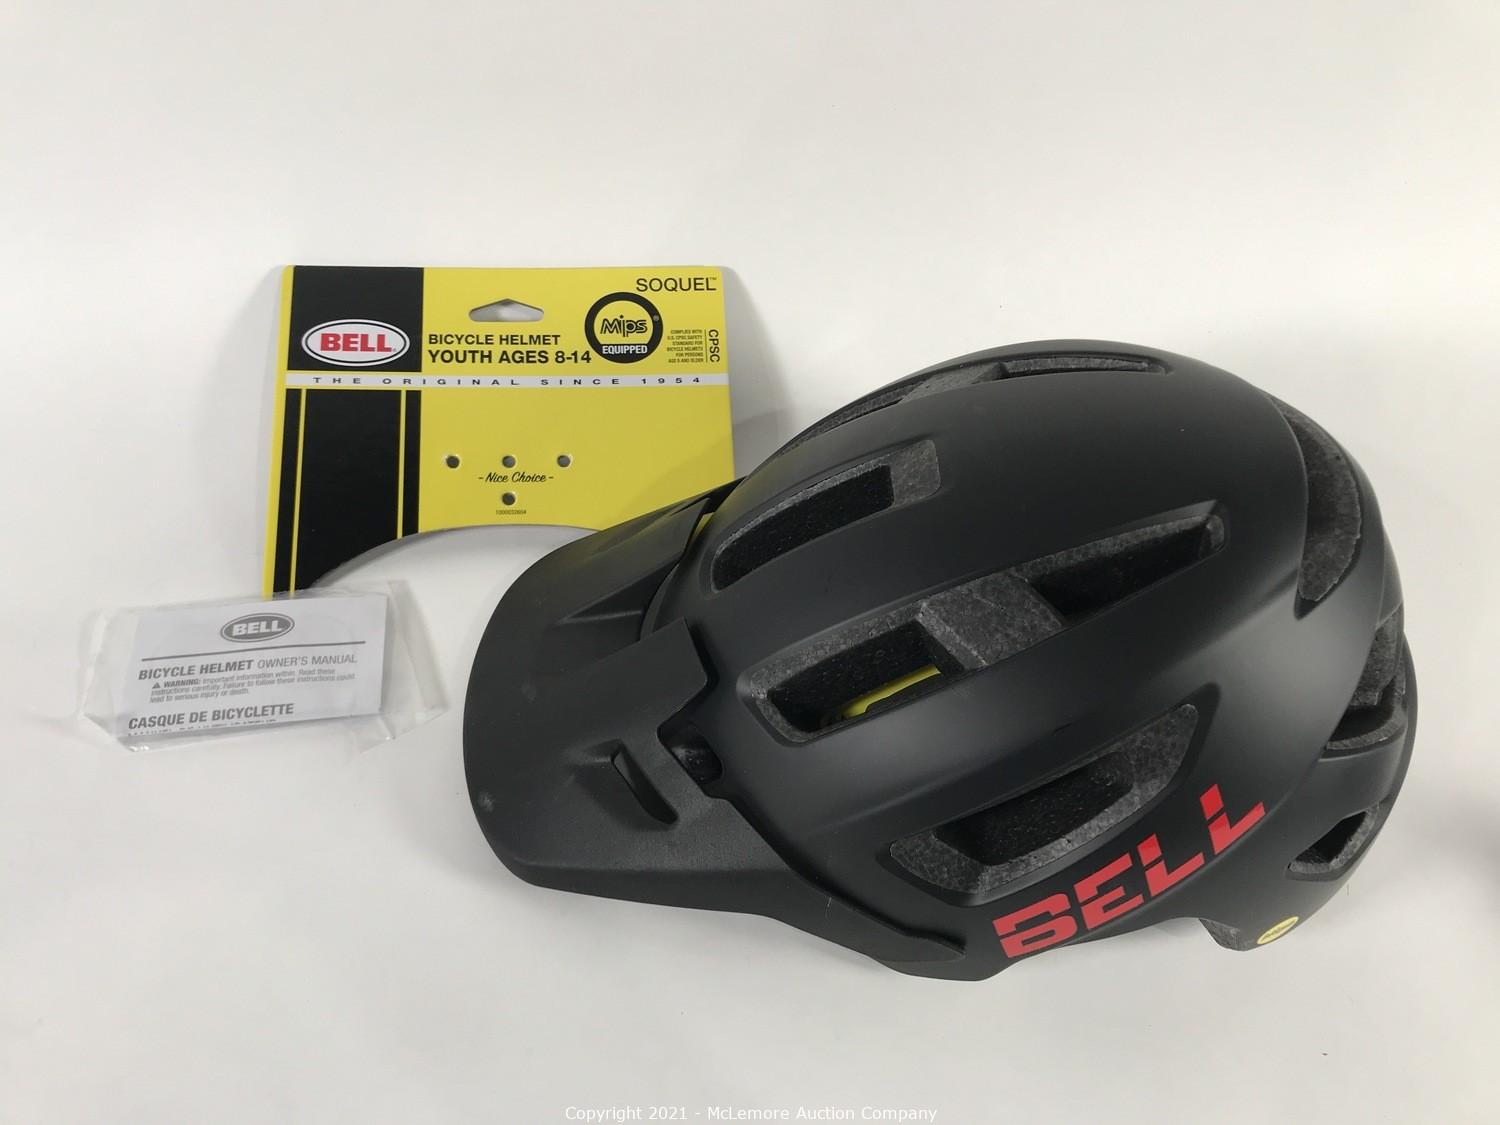 bell soquel mips bike helmet